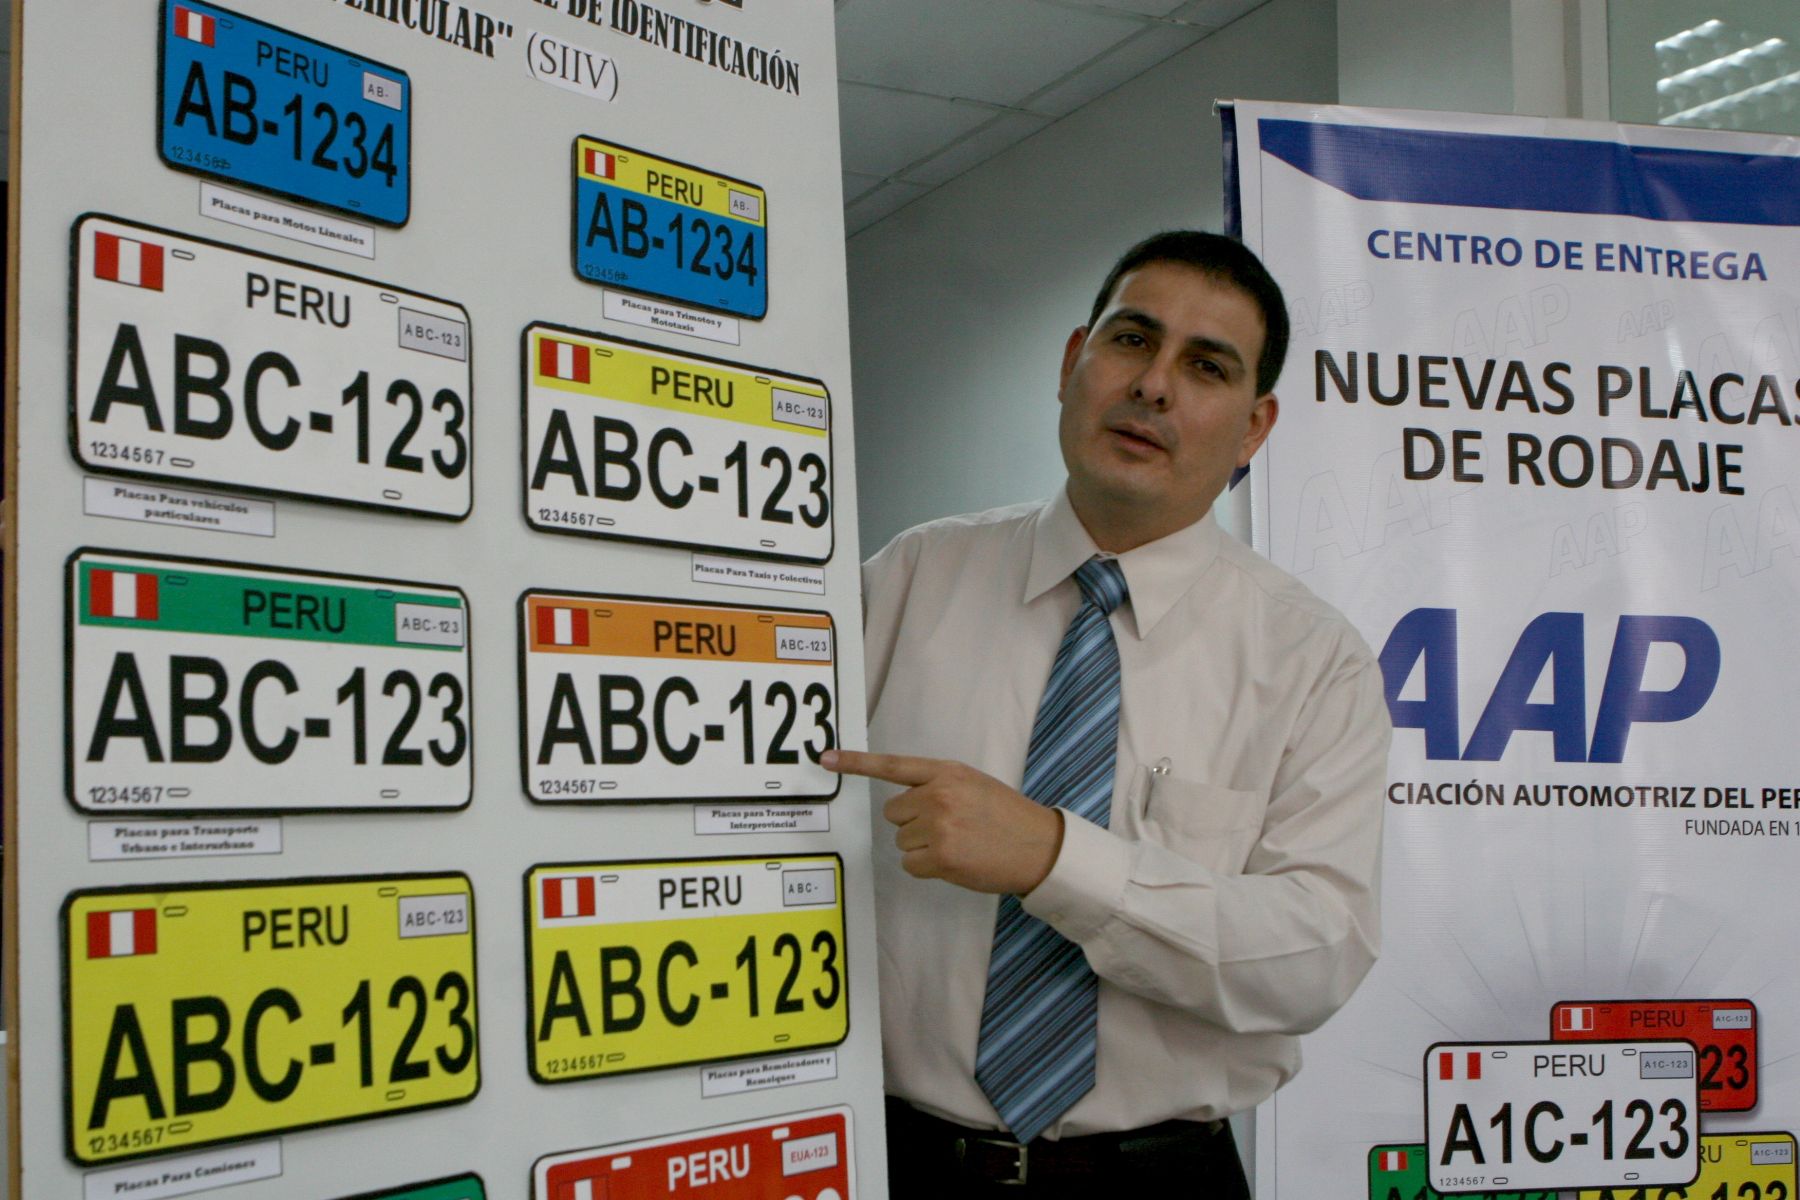 La Asociación Automotriz del Perú (AAP) acondicionó una primera oficina en el distrito de San Isidro para la entrega, a partir de la fecha, del nuevo kit del Sistema de Identificación Vehicular. Foto: ANDINA/Jorge Paz